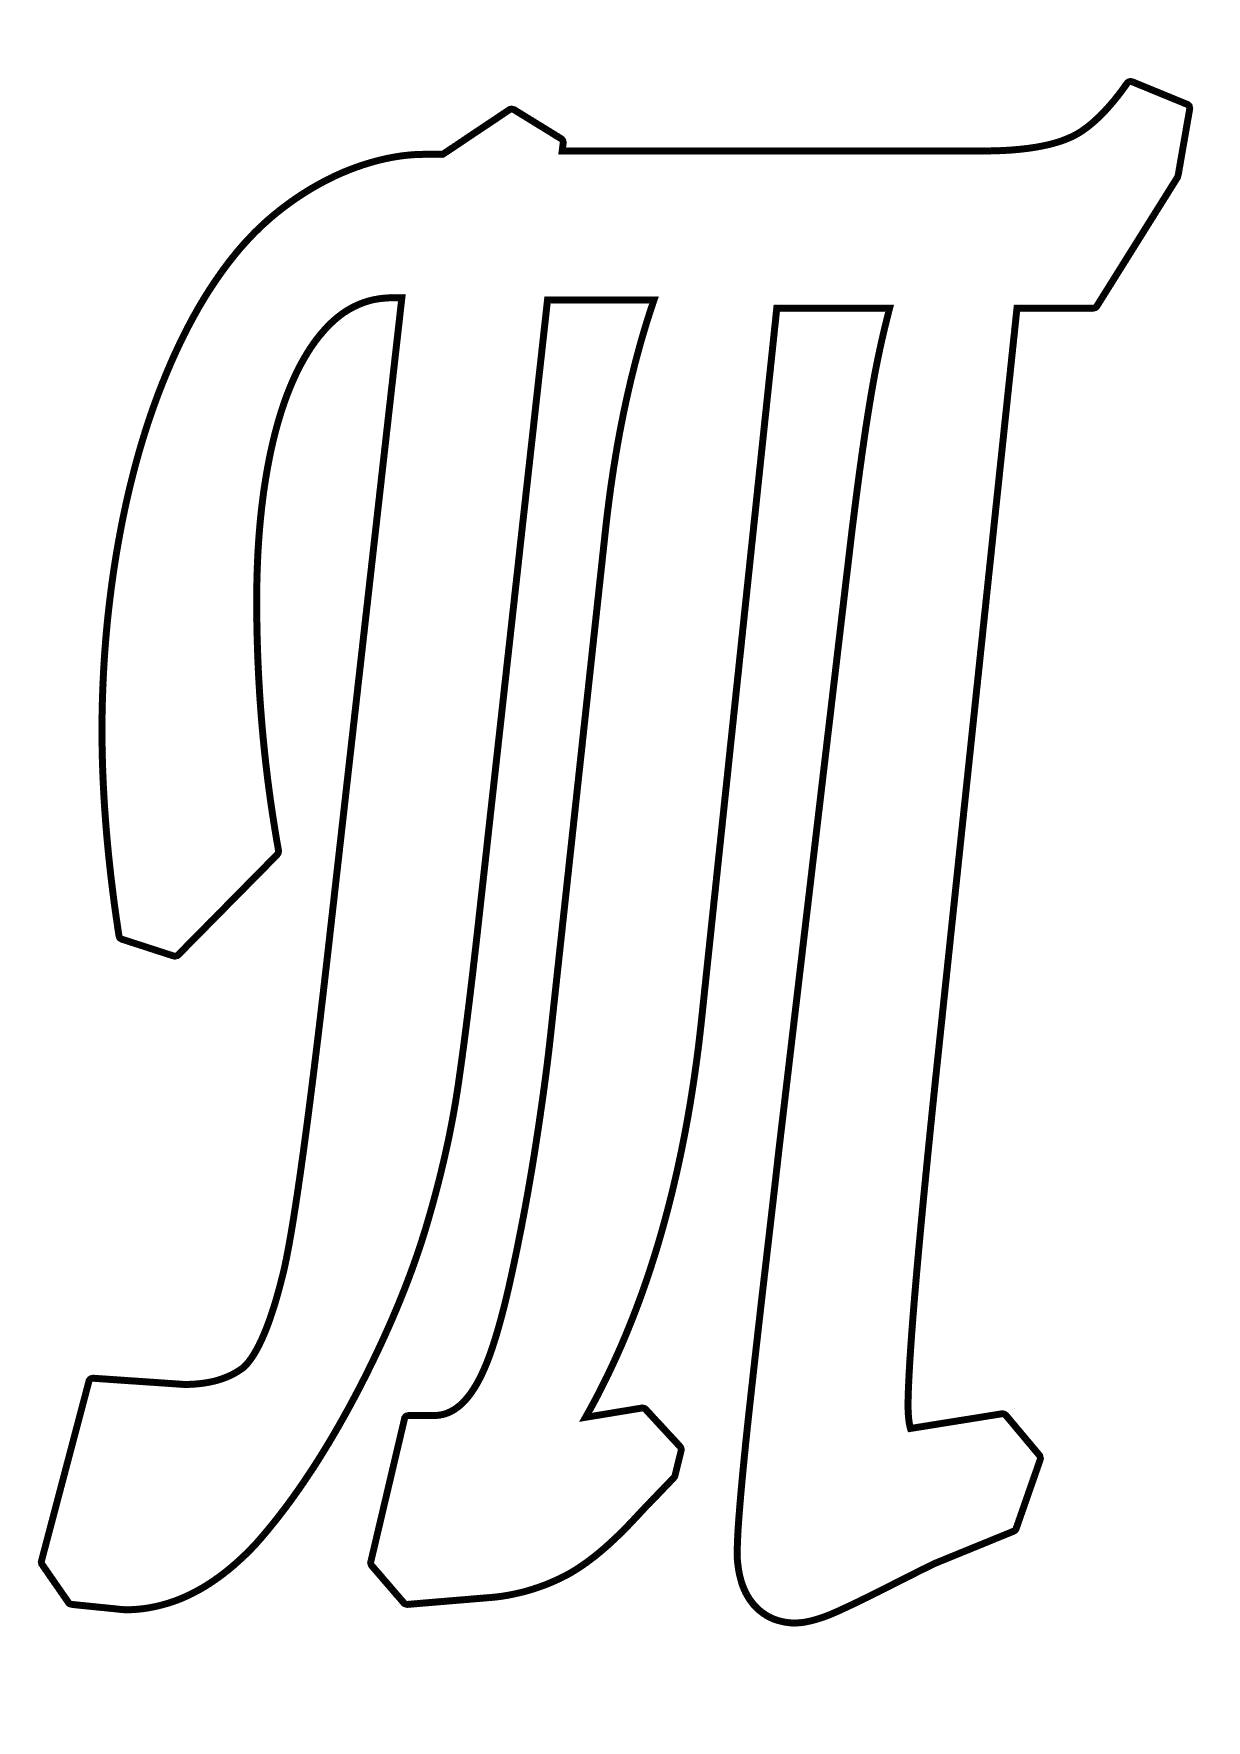 Название: Раскраска Буква Т формата А4. Категория: Шаблон. Теги: Шаблон.